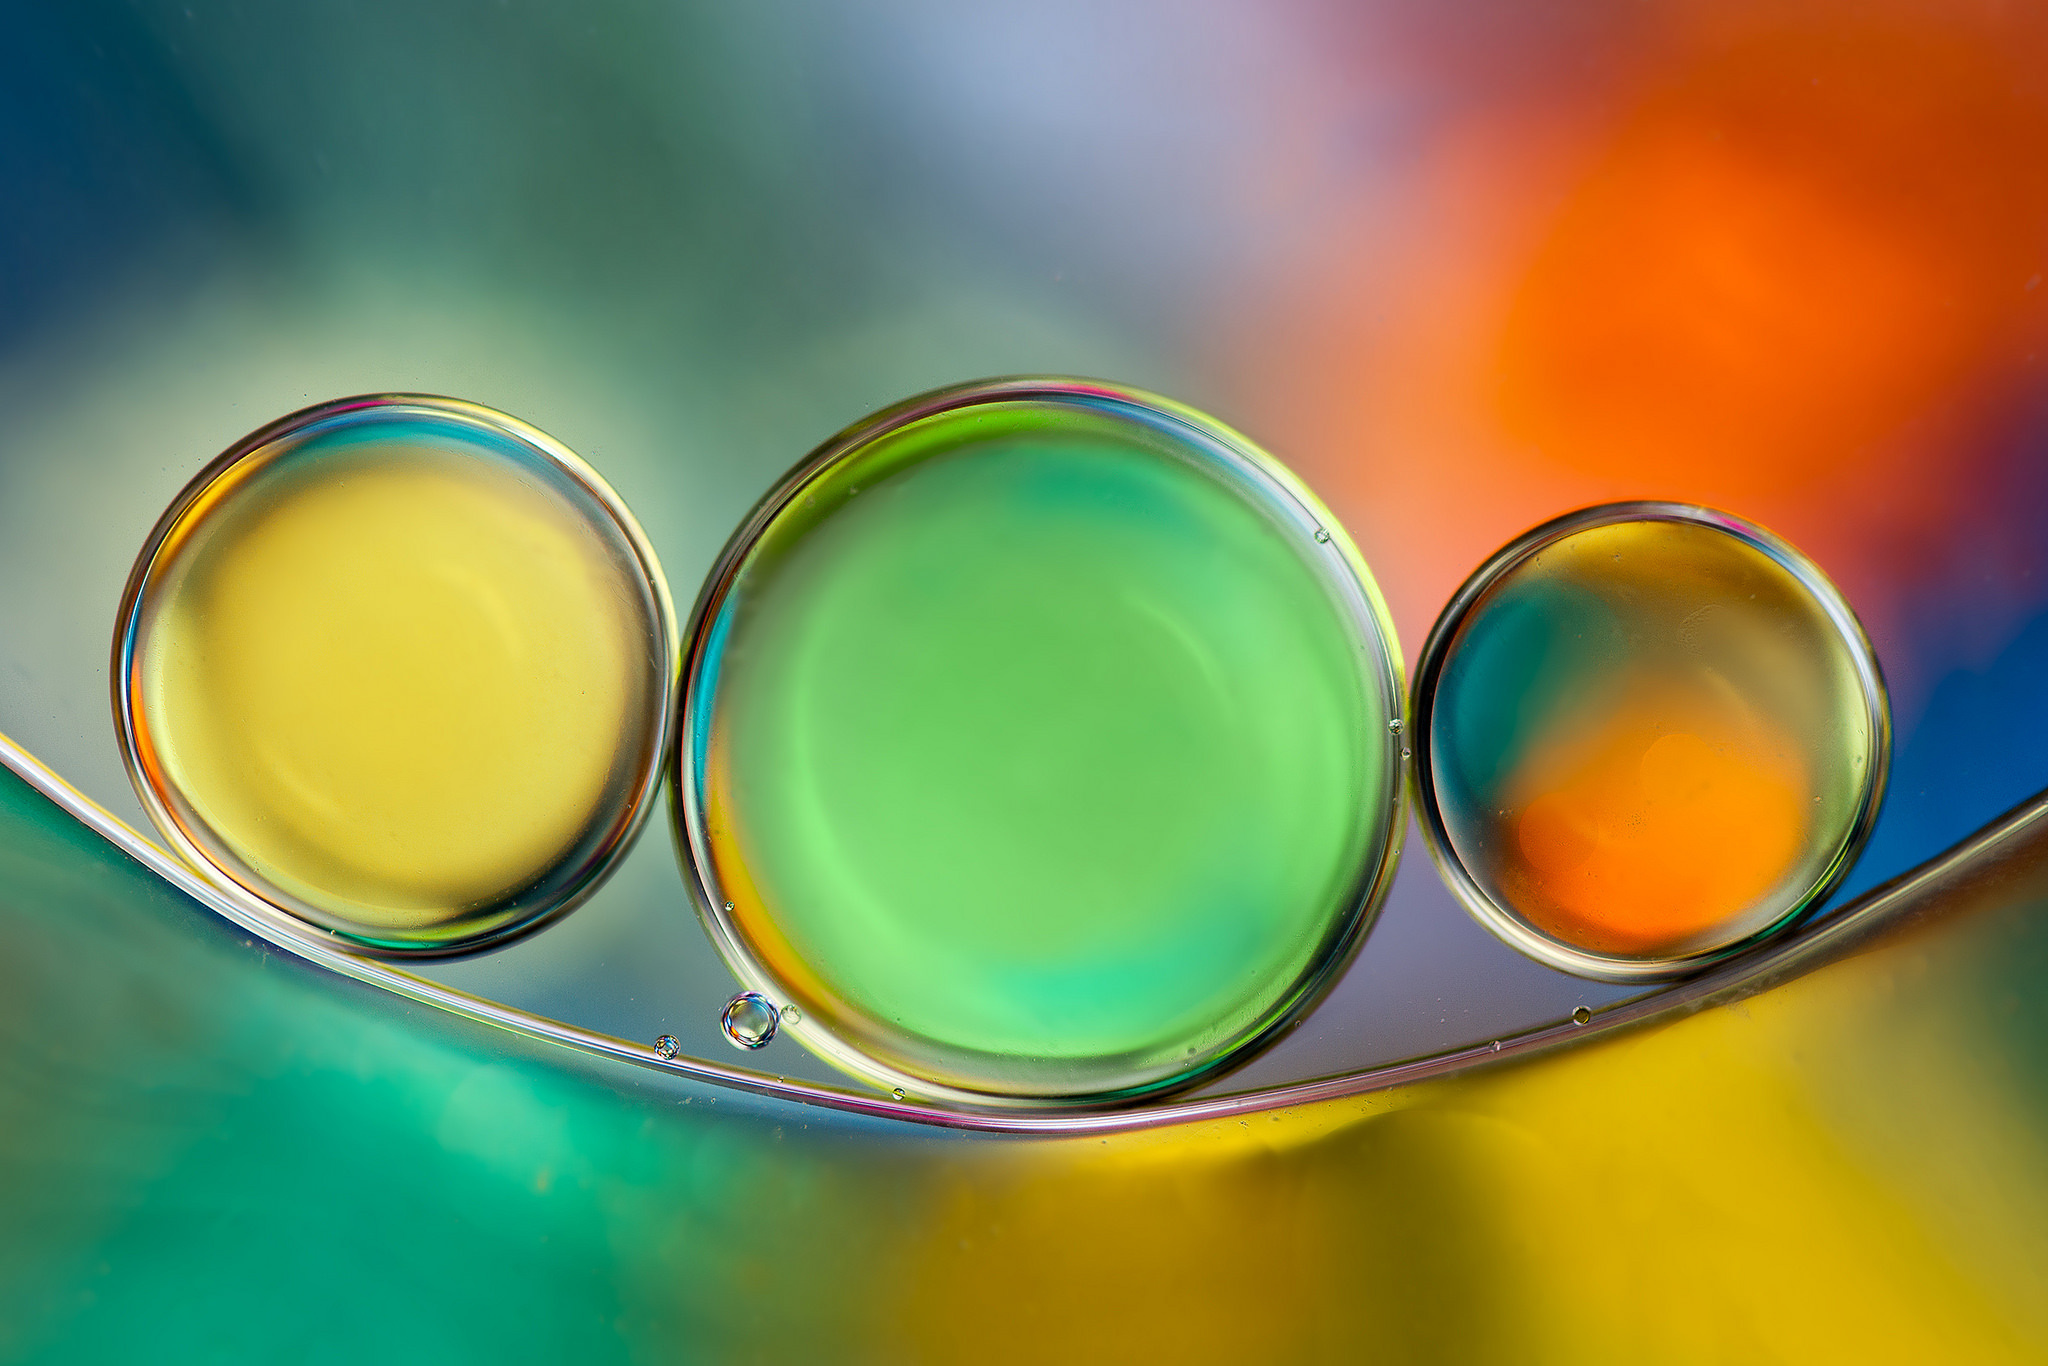 Пузырьки в масле. Пузырьки разного цвета. Пузырьки с жидкостью разного цвета. Цветная вода пузырьки макро. Мыльные пузыри, оранжевые.